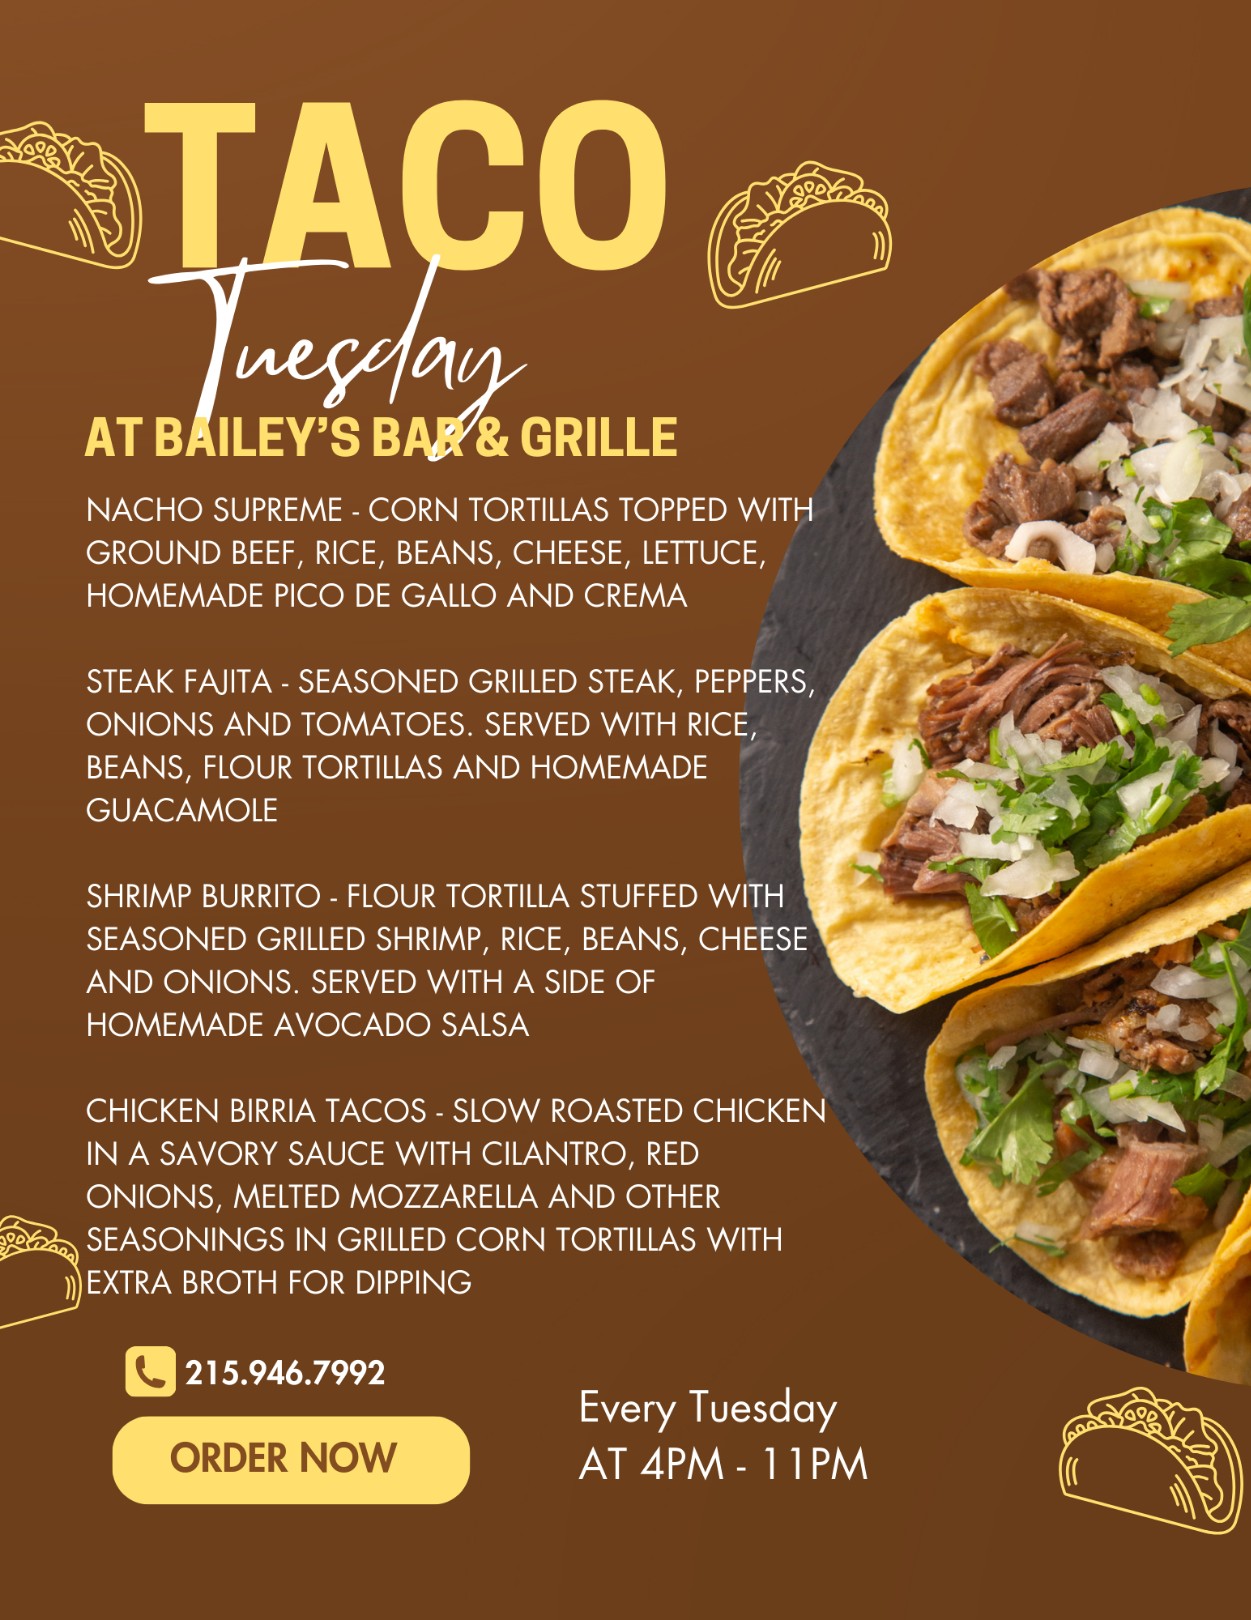 Taco tuesday at barley's bar and grill.